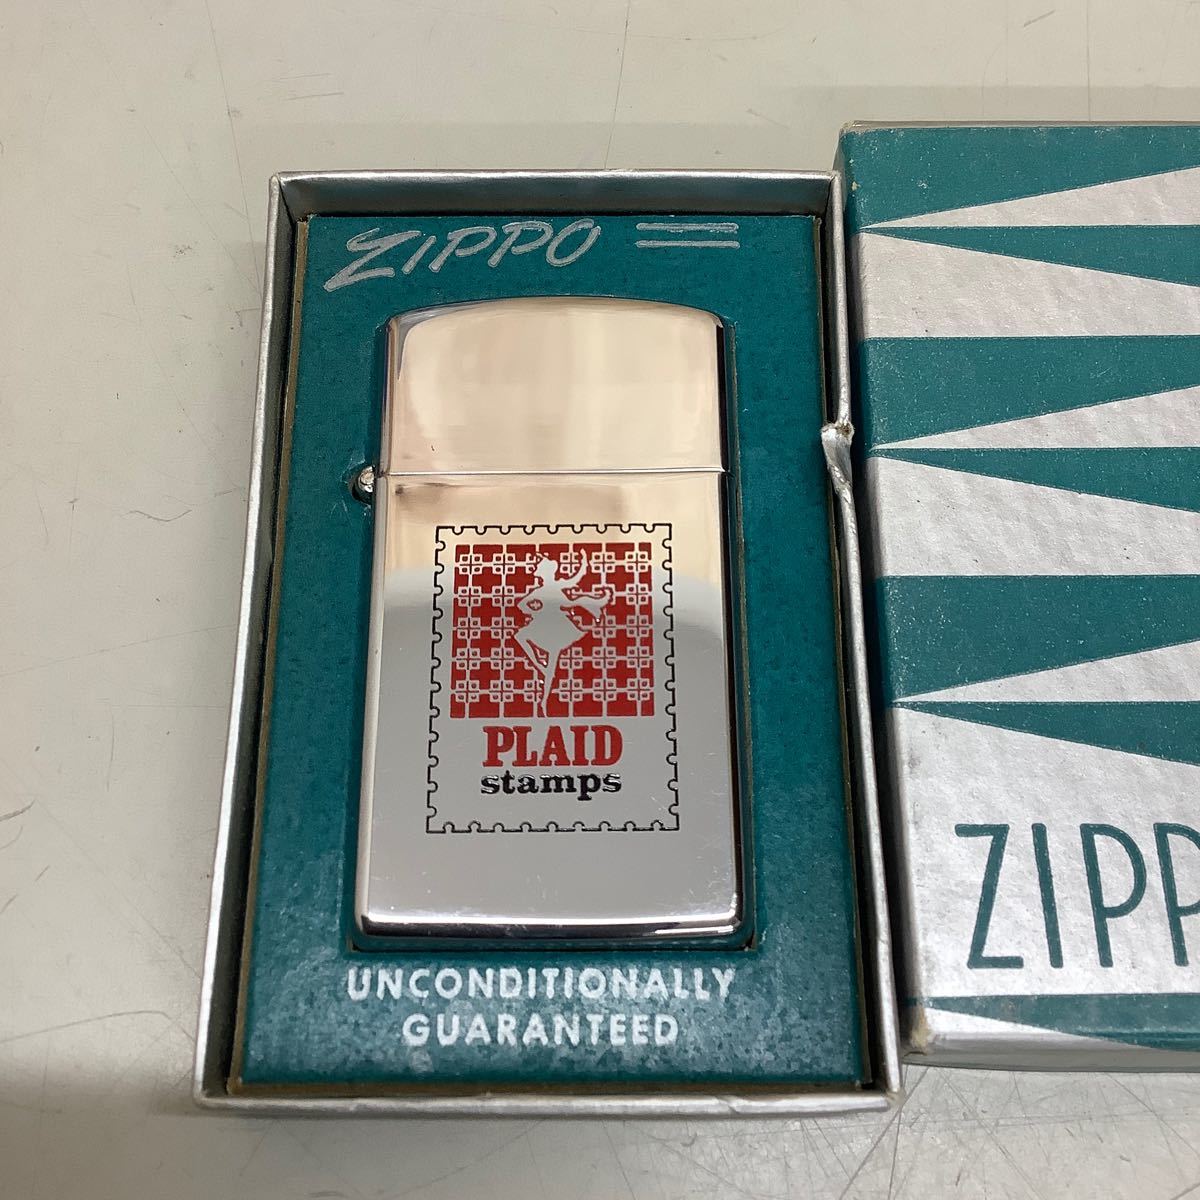 ⑥ ZIPPO ジッポ スリム 1962 PLAID stamps 旧ロゴ ヴィンテージ 現状品 着火未確認 _画像2